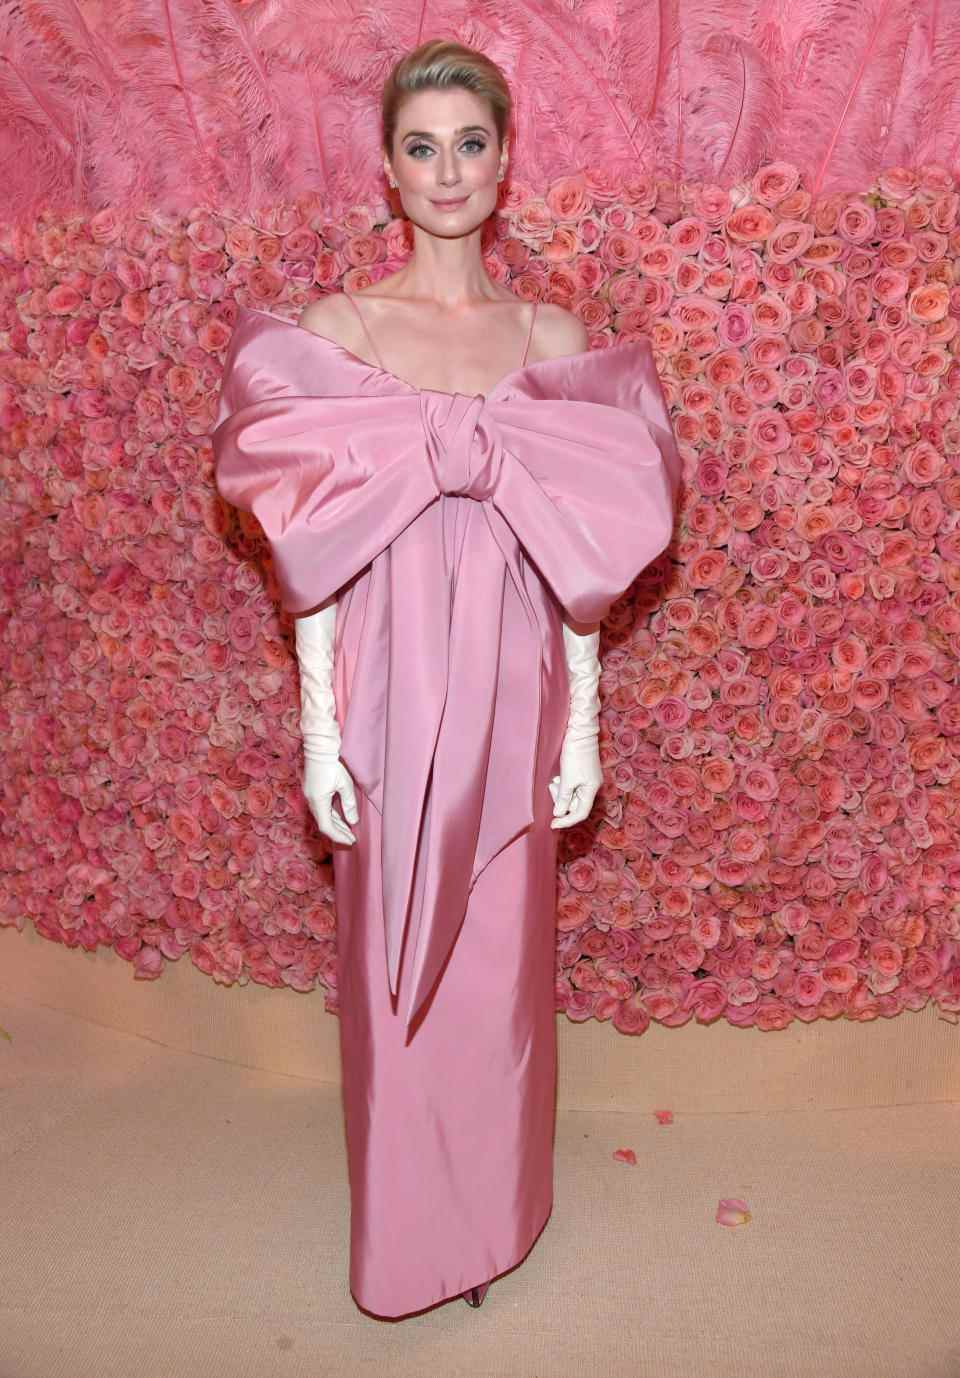 Elizabeth Debicki sur le tapis rouge du Met Gala 2019 vêtue d'une robe rose 